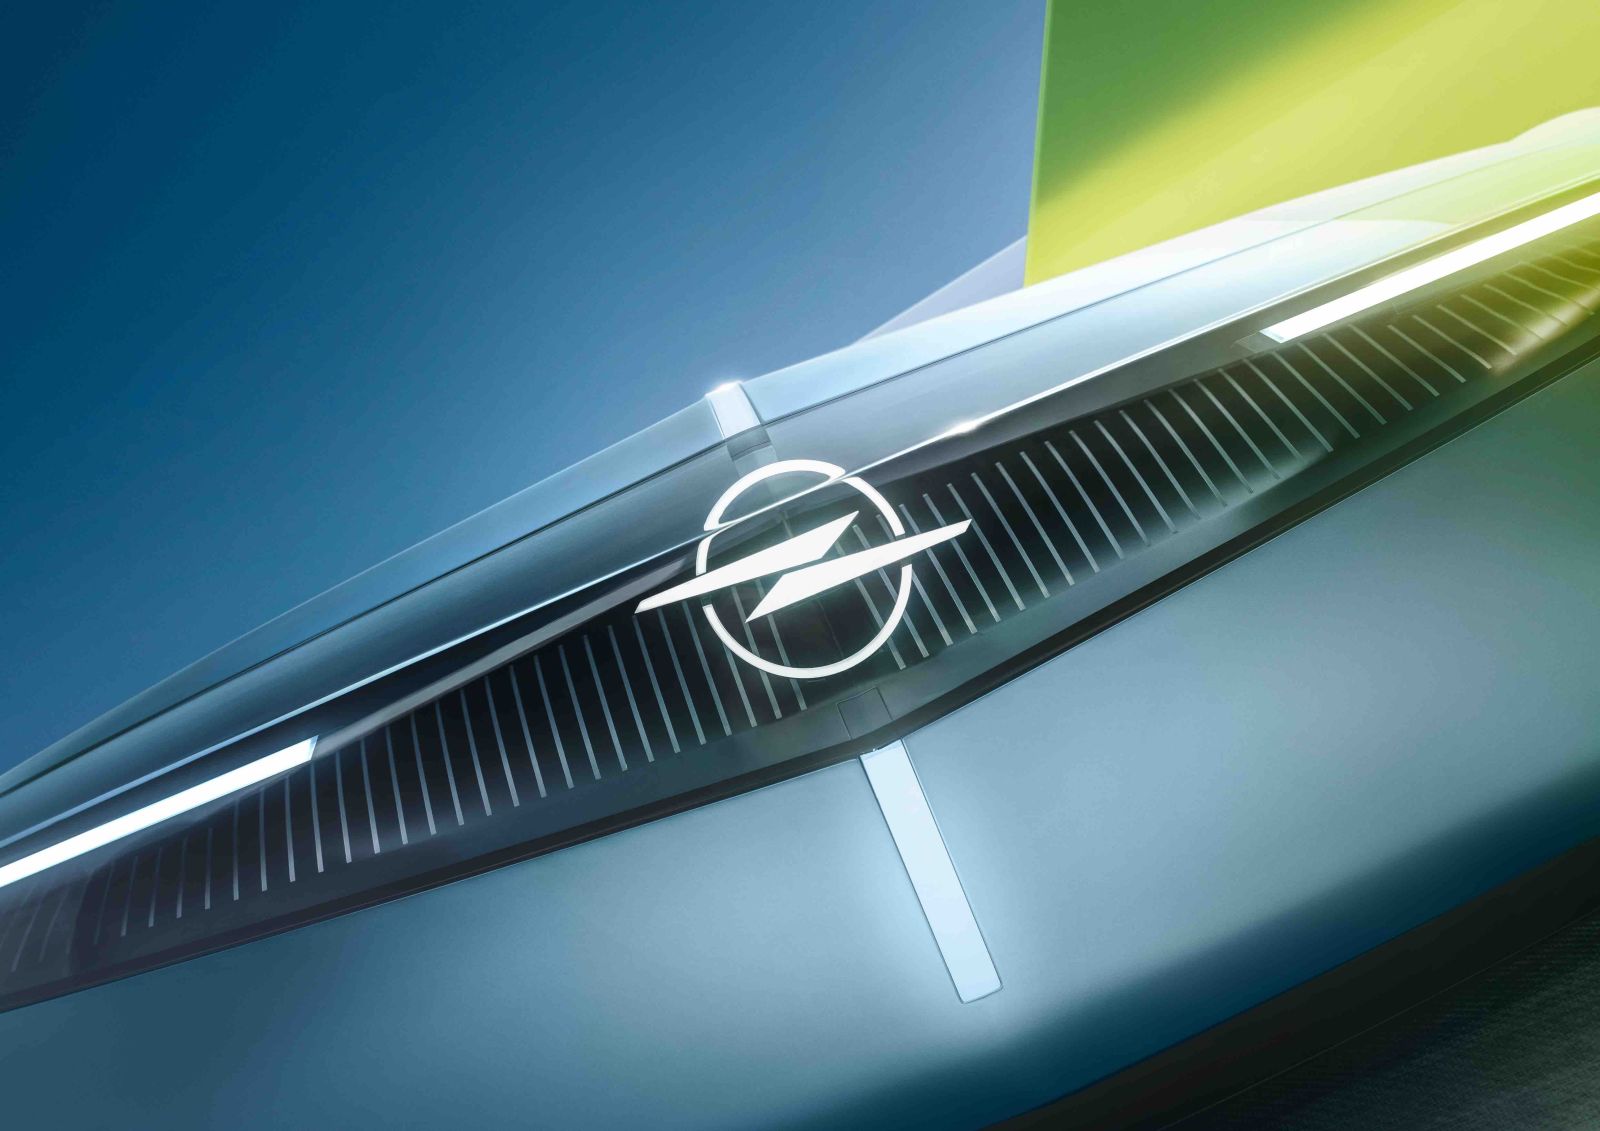 Der erste Blick auf den atemberaubenden neuen Opel Experimental